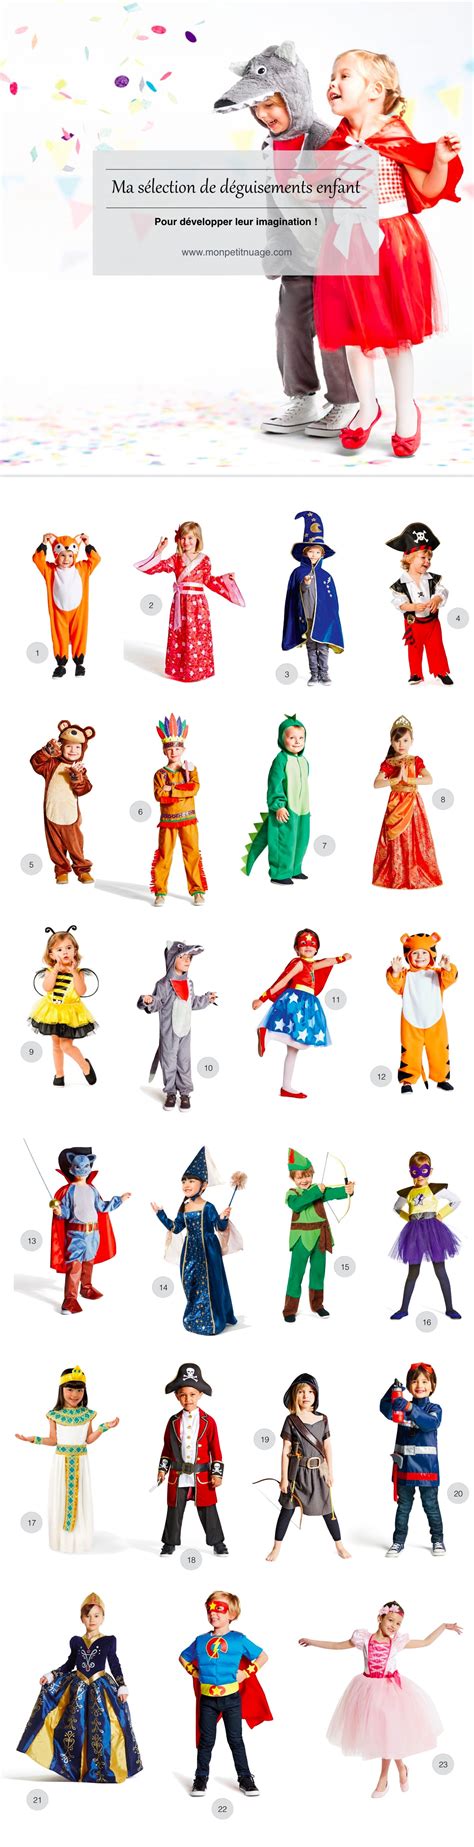 ma selection de deguisements enfant pour le carnaval blog lifestyle